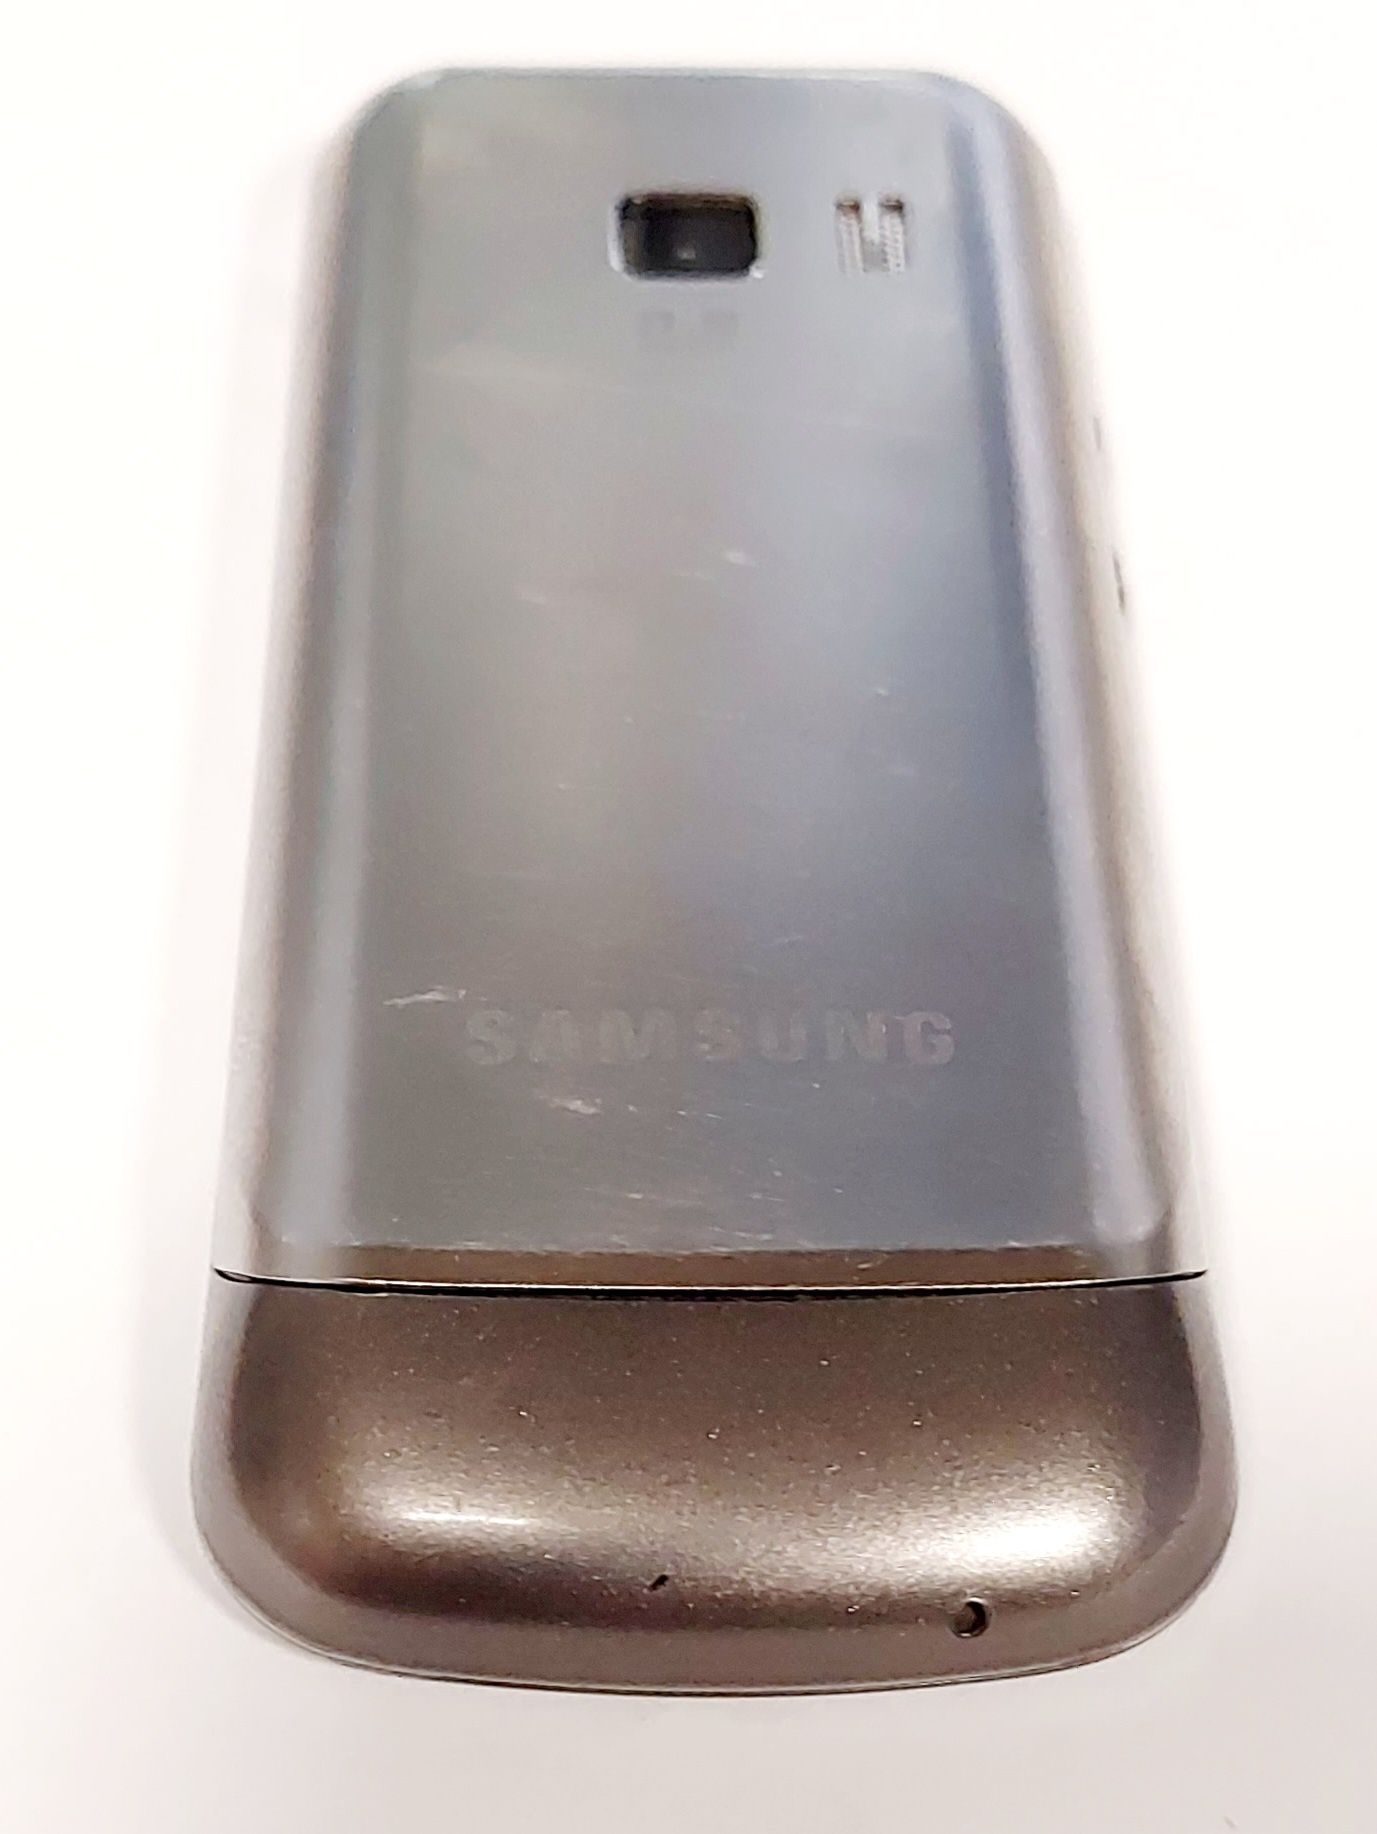 Telefon Samsung - duże klawisze